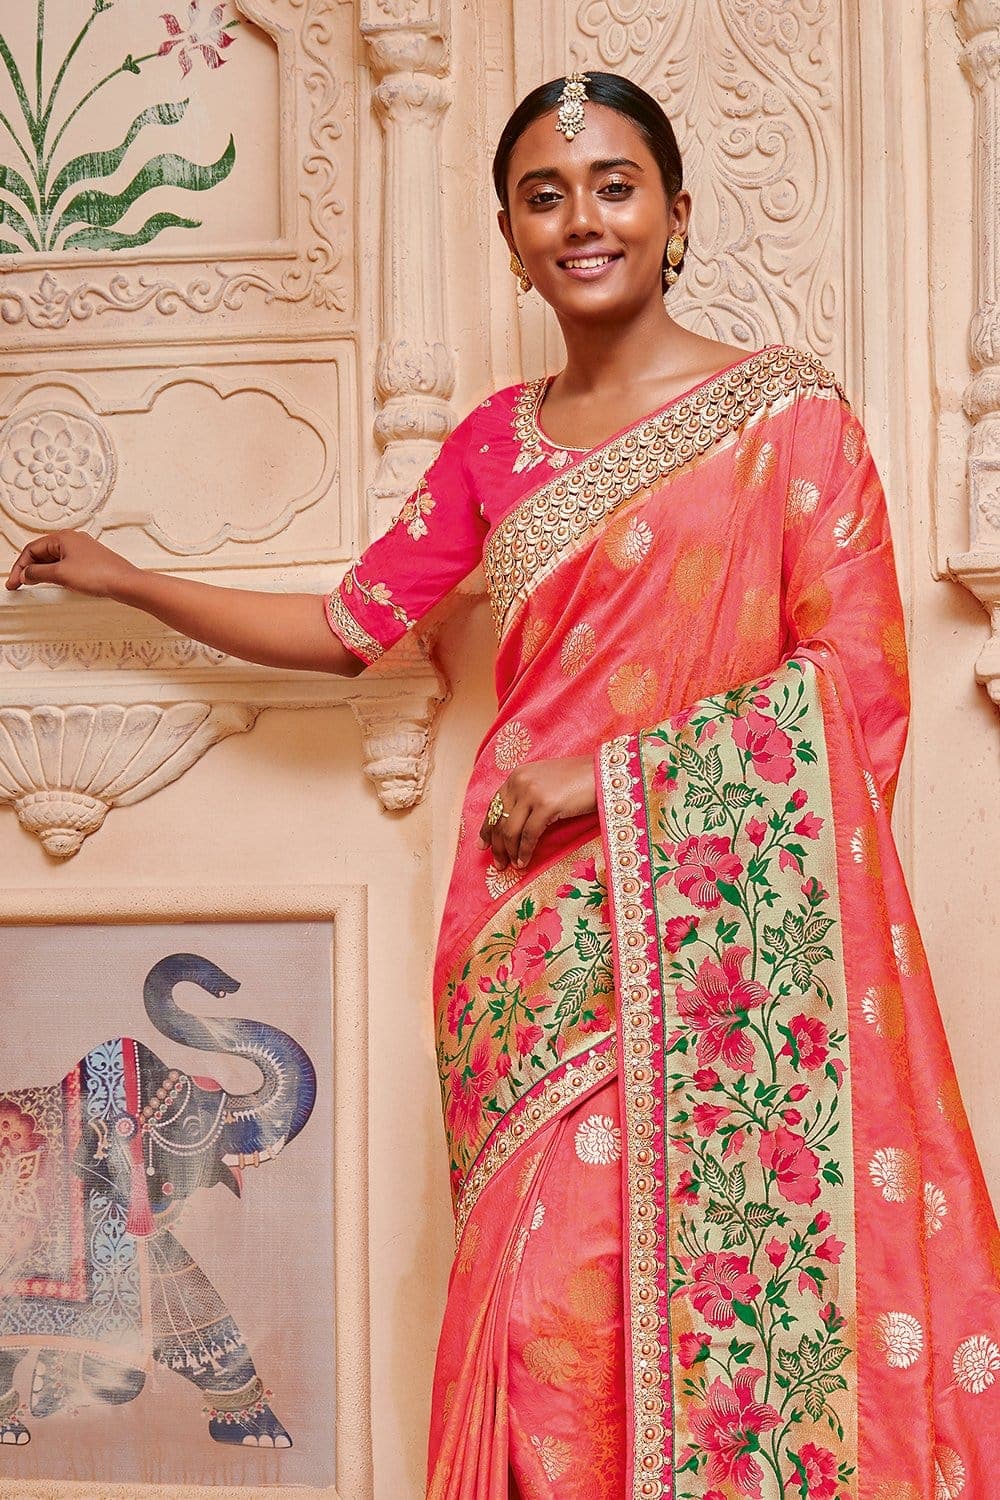 Designer Banarasi Saree Coral Pink Woven Designer Banarasi Saree With Embroidered Silk Blouse - Wedding Sutra Collection saree online